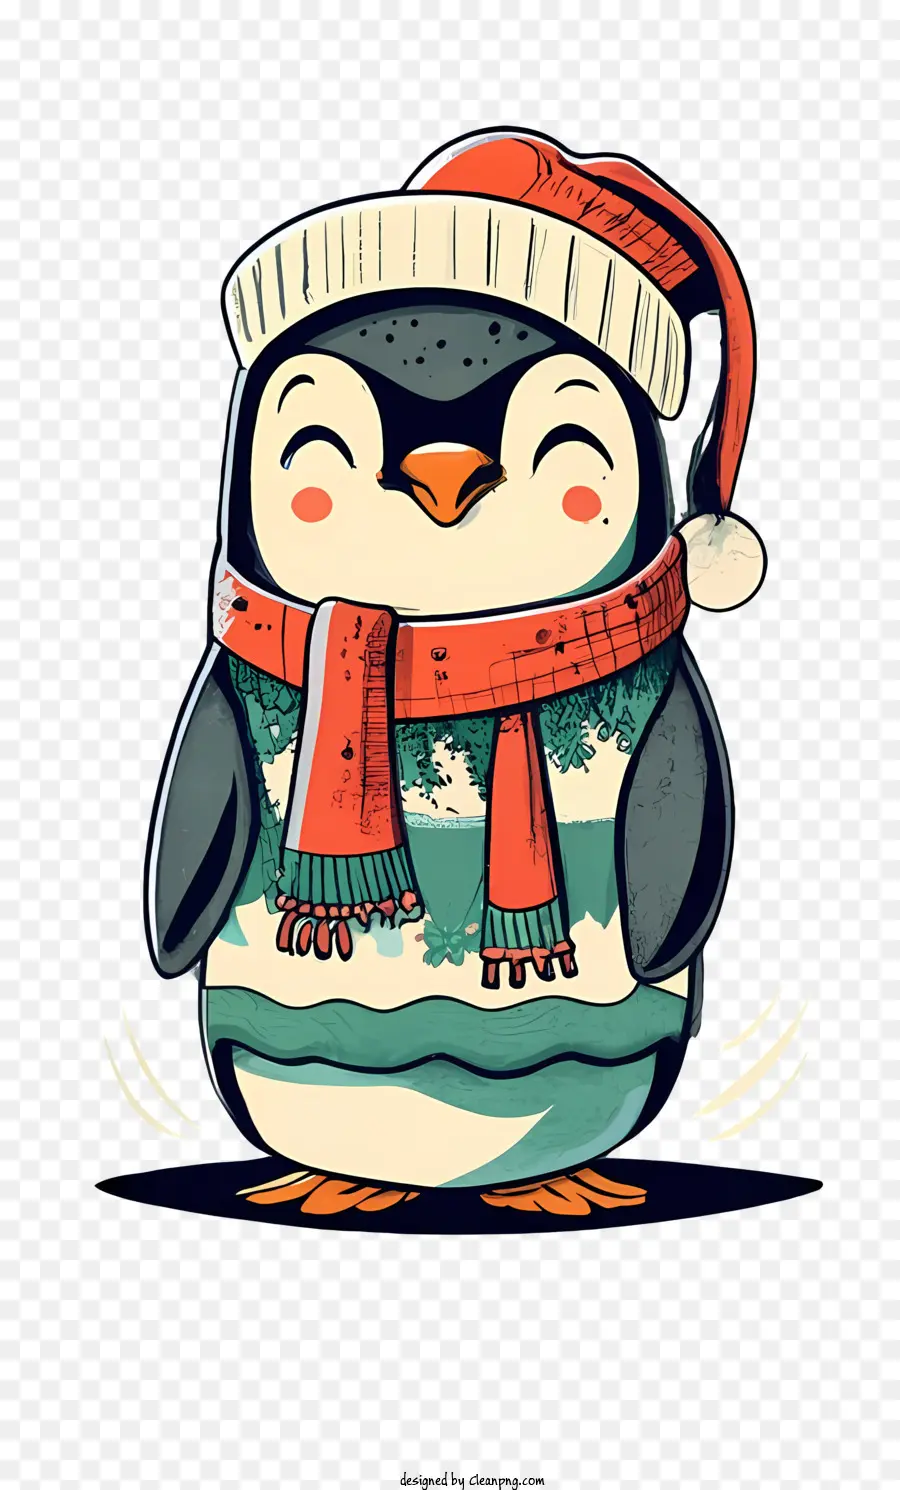 Pinguim Bonito，Penguin PNG